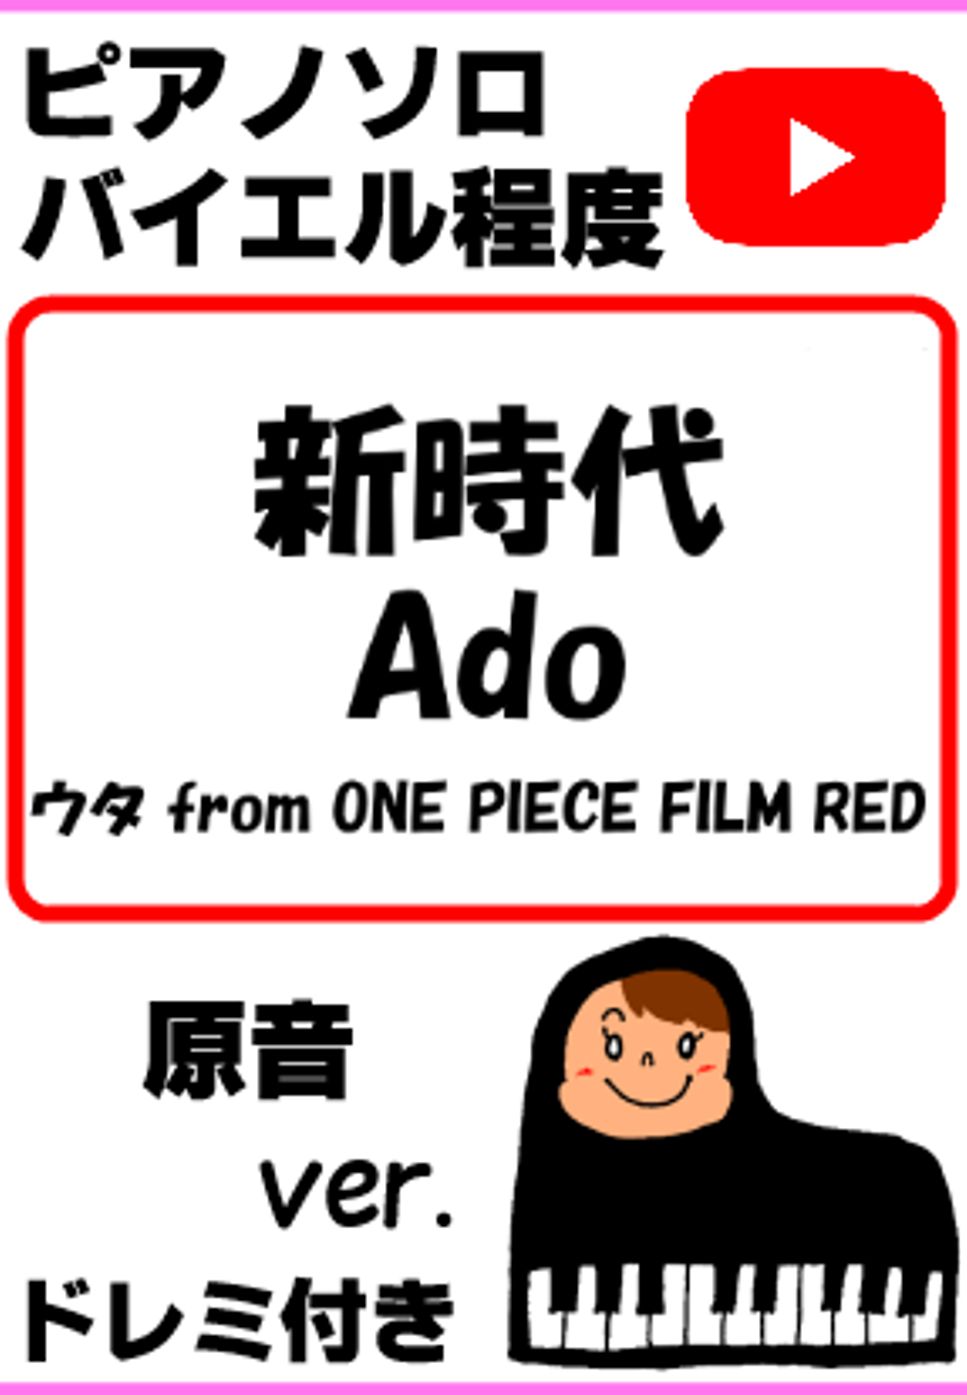 中田ヤスタカ - 新時代 Ado ウタ from ONE PIECE FILM RED 原音ver. (親子連弾/連弾/簡単ピアノ/白鍵ピアノ/演奏会/ドレミ付/楽譜/鍵盤/piano) by ラボのピアノ